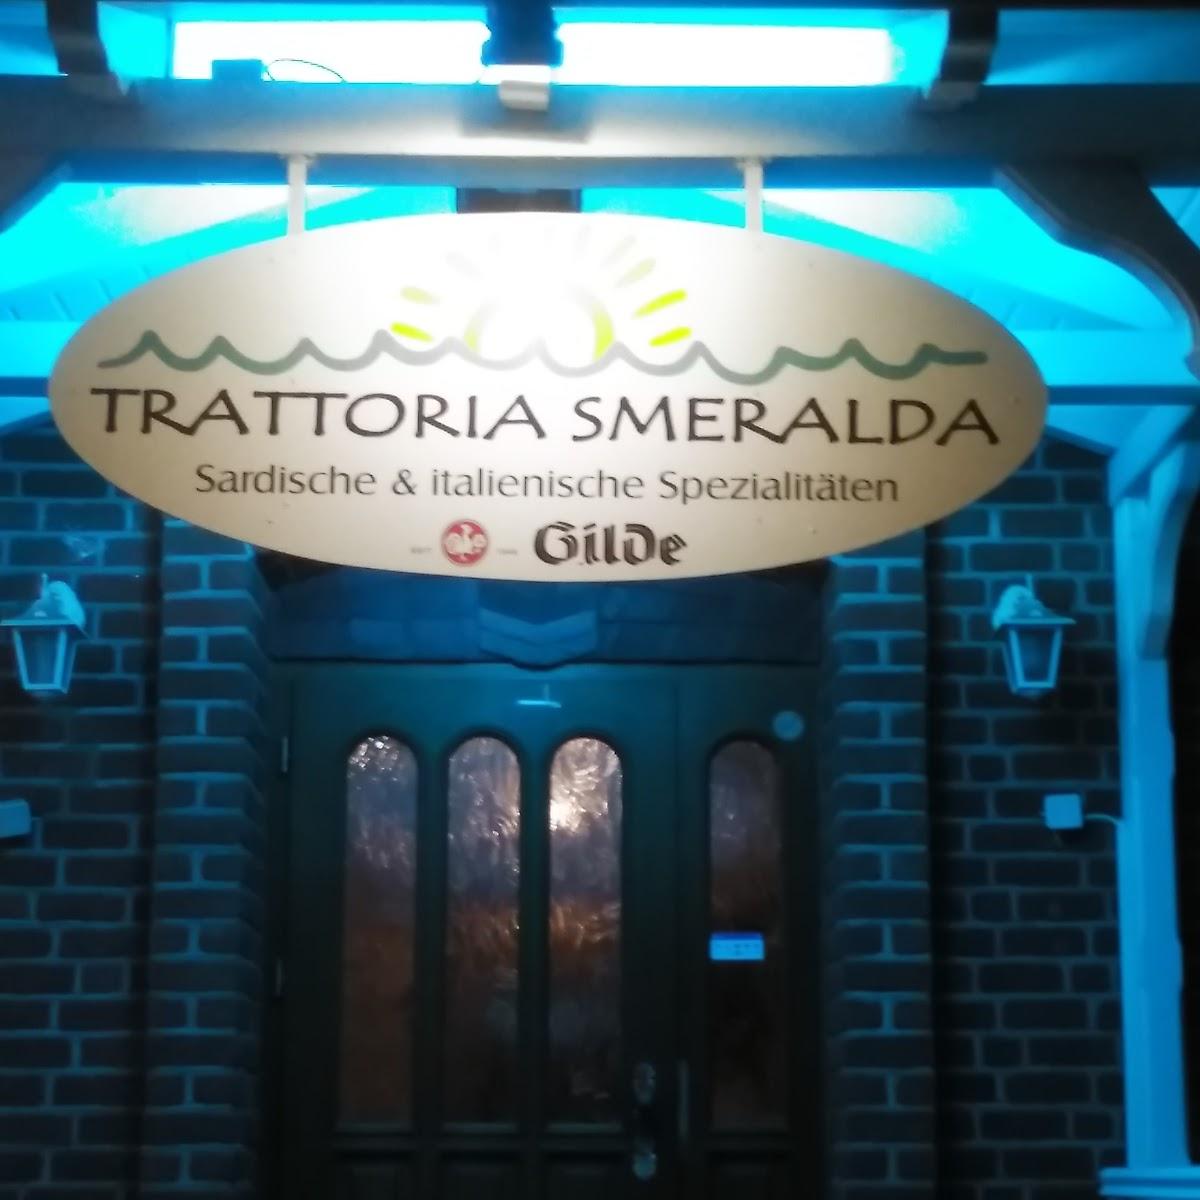 Restaurant "TRATTORIA SMERALDA" in Calberlah